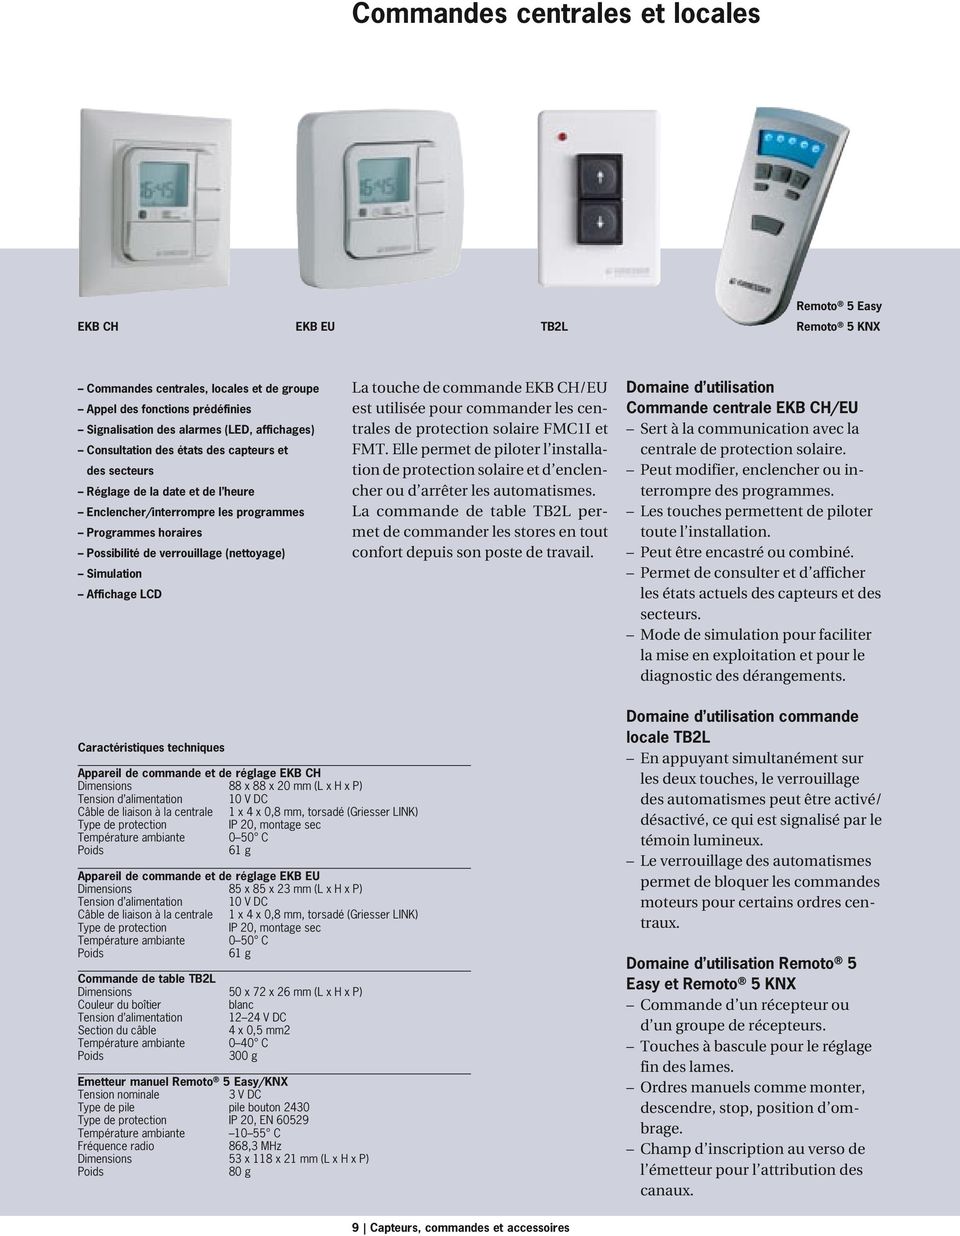 Affichage LCD La touche de commande EKB CH/EU est utilisée pour commander les centrales de protection solaire FMC1I et FMT.